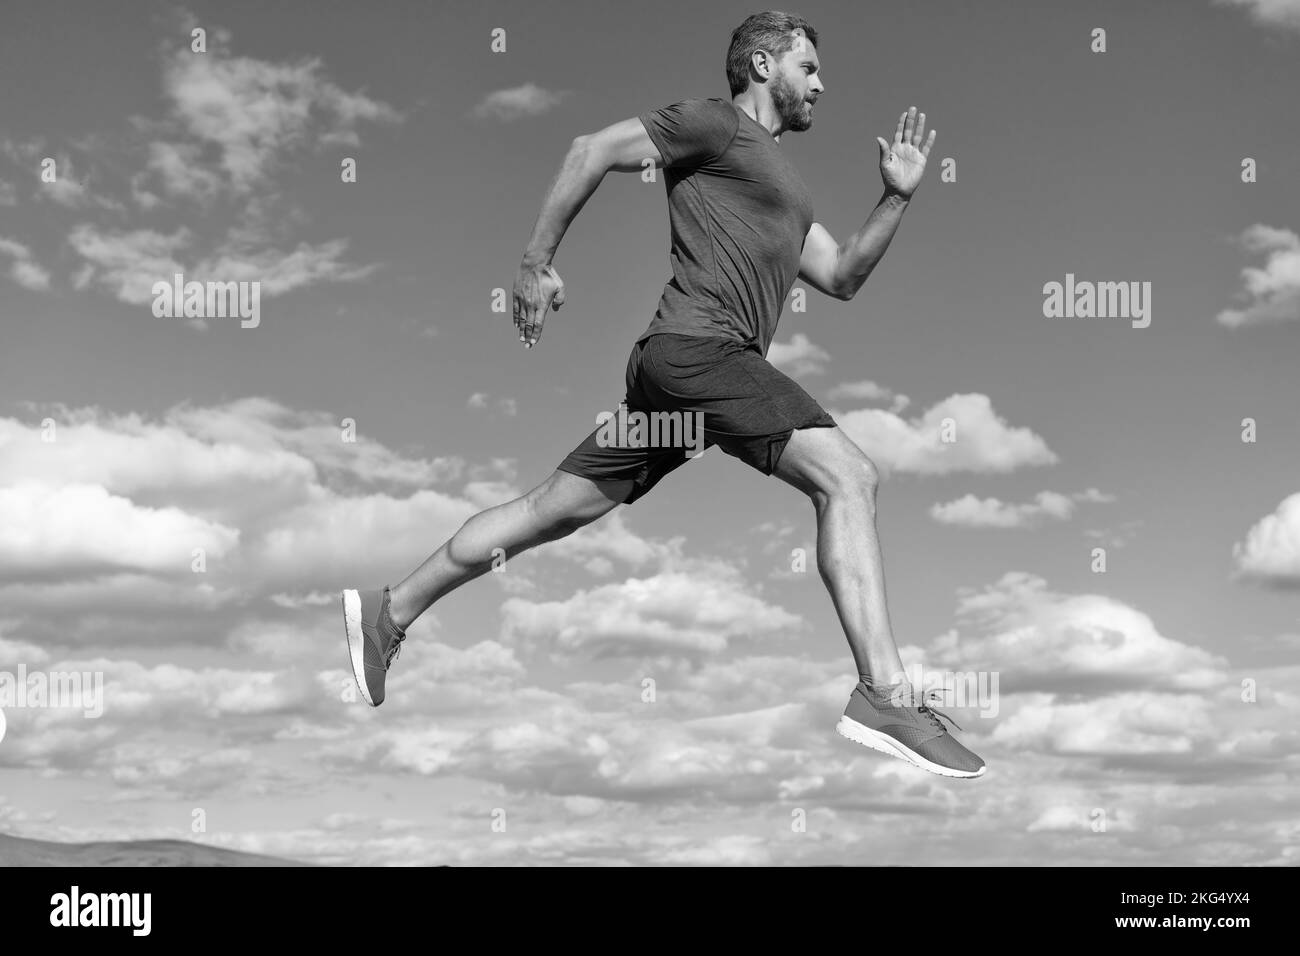 Voller Energie. Fühlen Sie Freiheit. marathon-Geschwindigkeit. Ausdauer und Ausdauer. Jung und frei. sprinter. Sportler laufen schnell, um zu gewinnen. Workout-Aktivität. Gesundheit Stockfoto